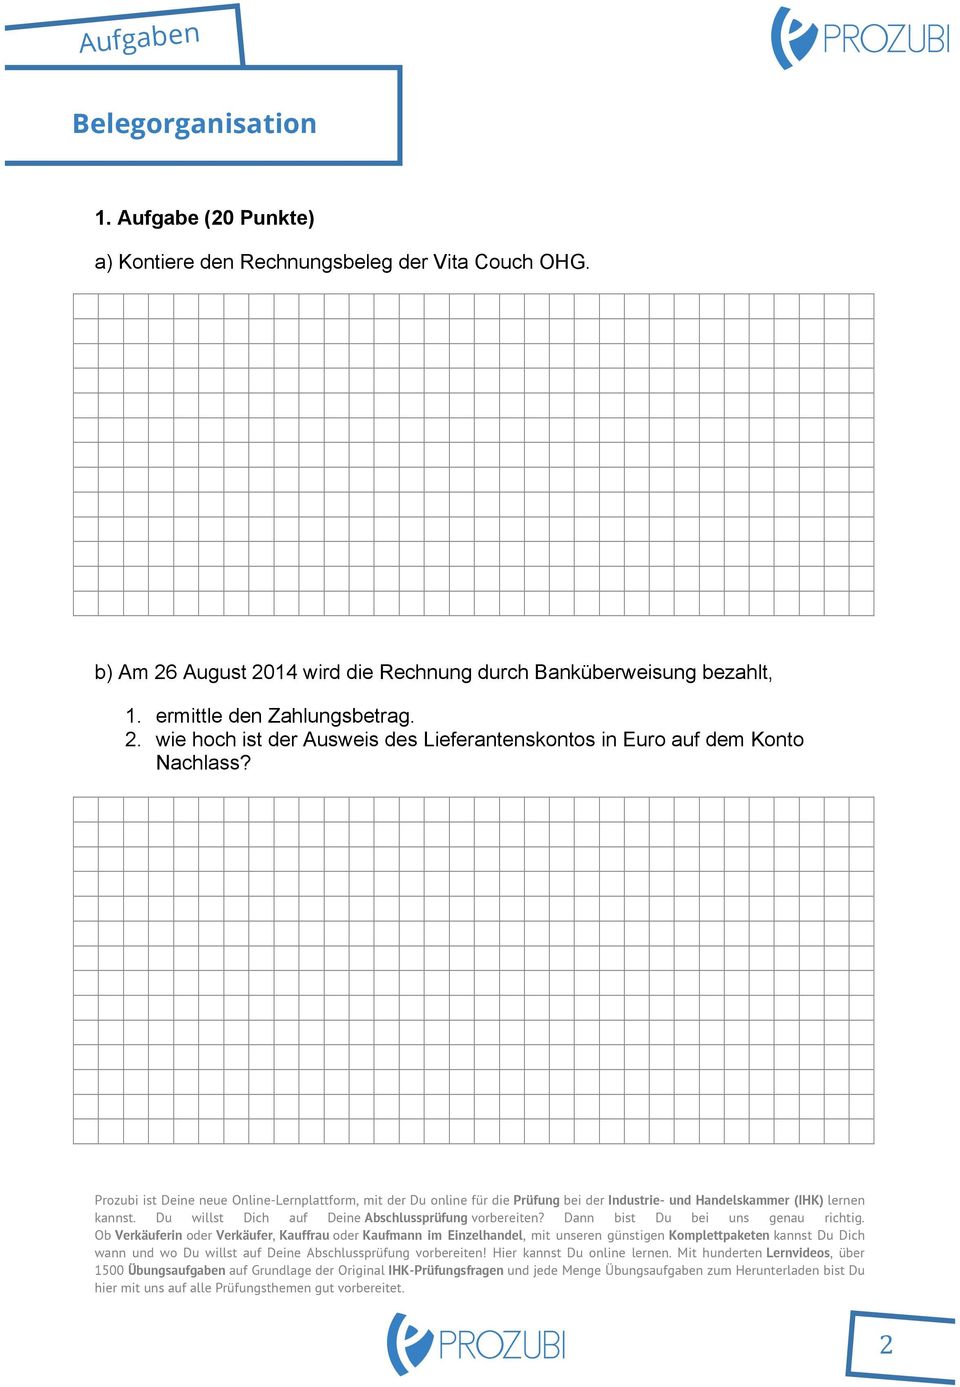 b) Am 26 August 2014 wird die Rechnung durch Banküberweisung